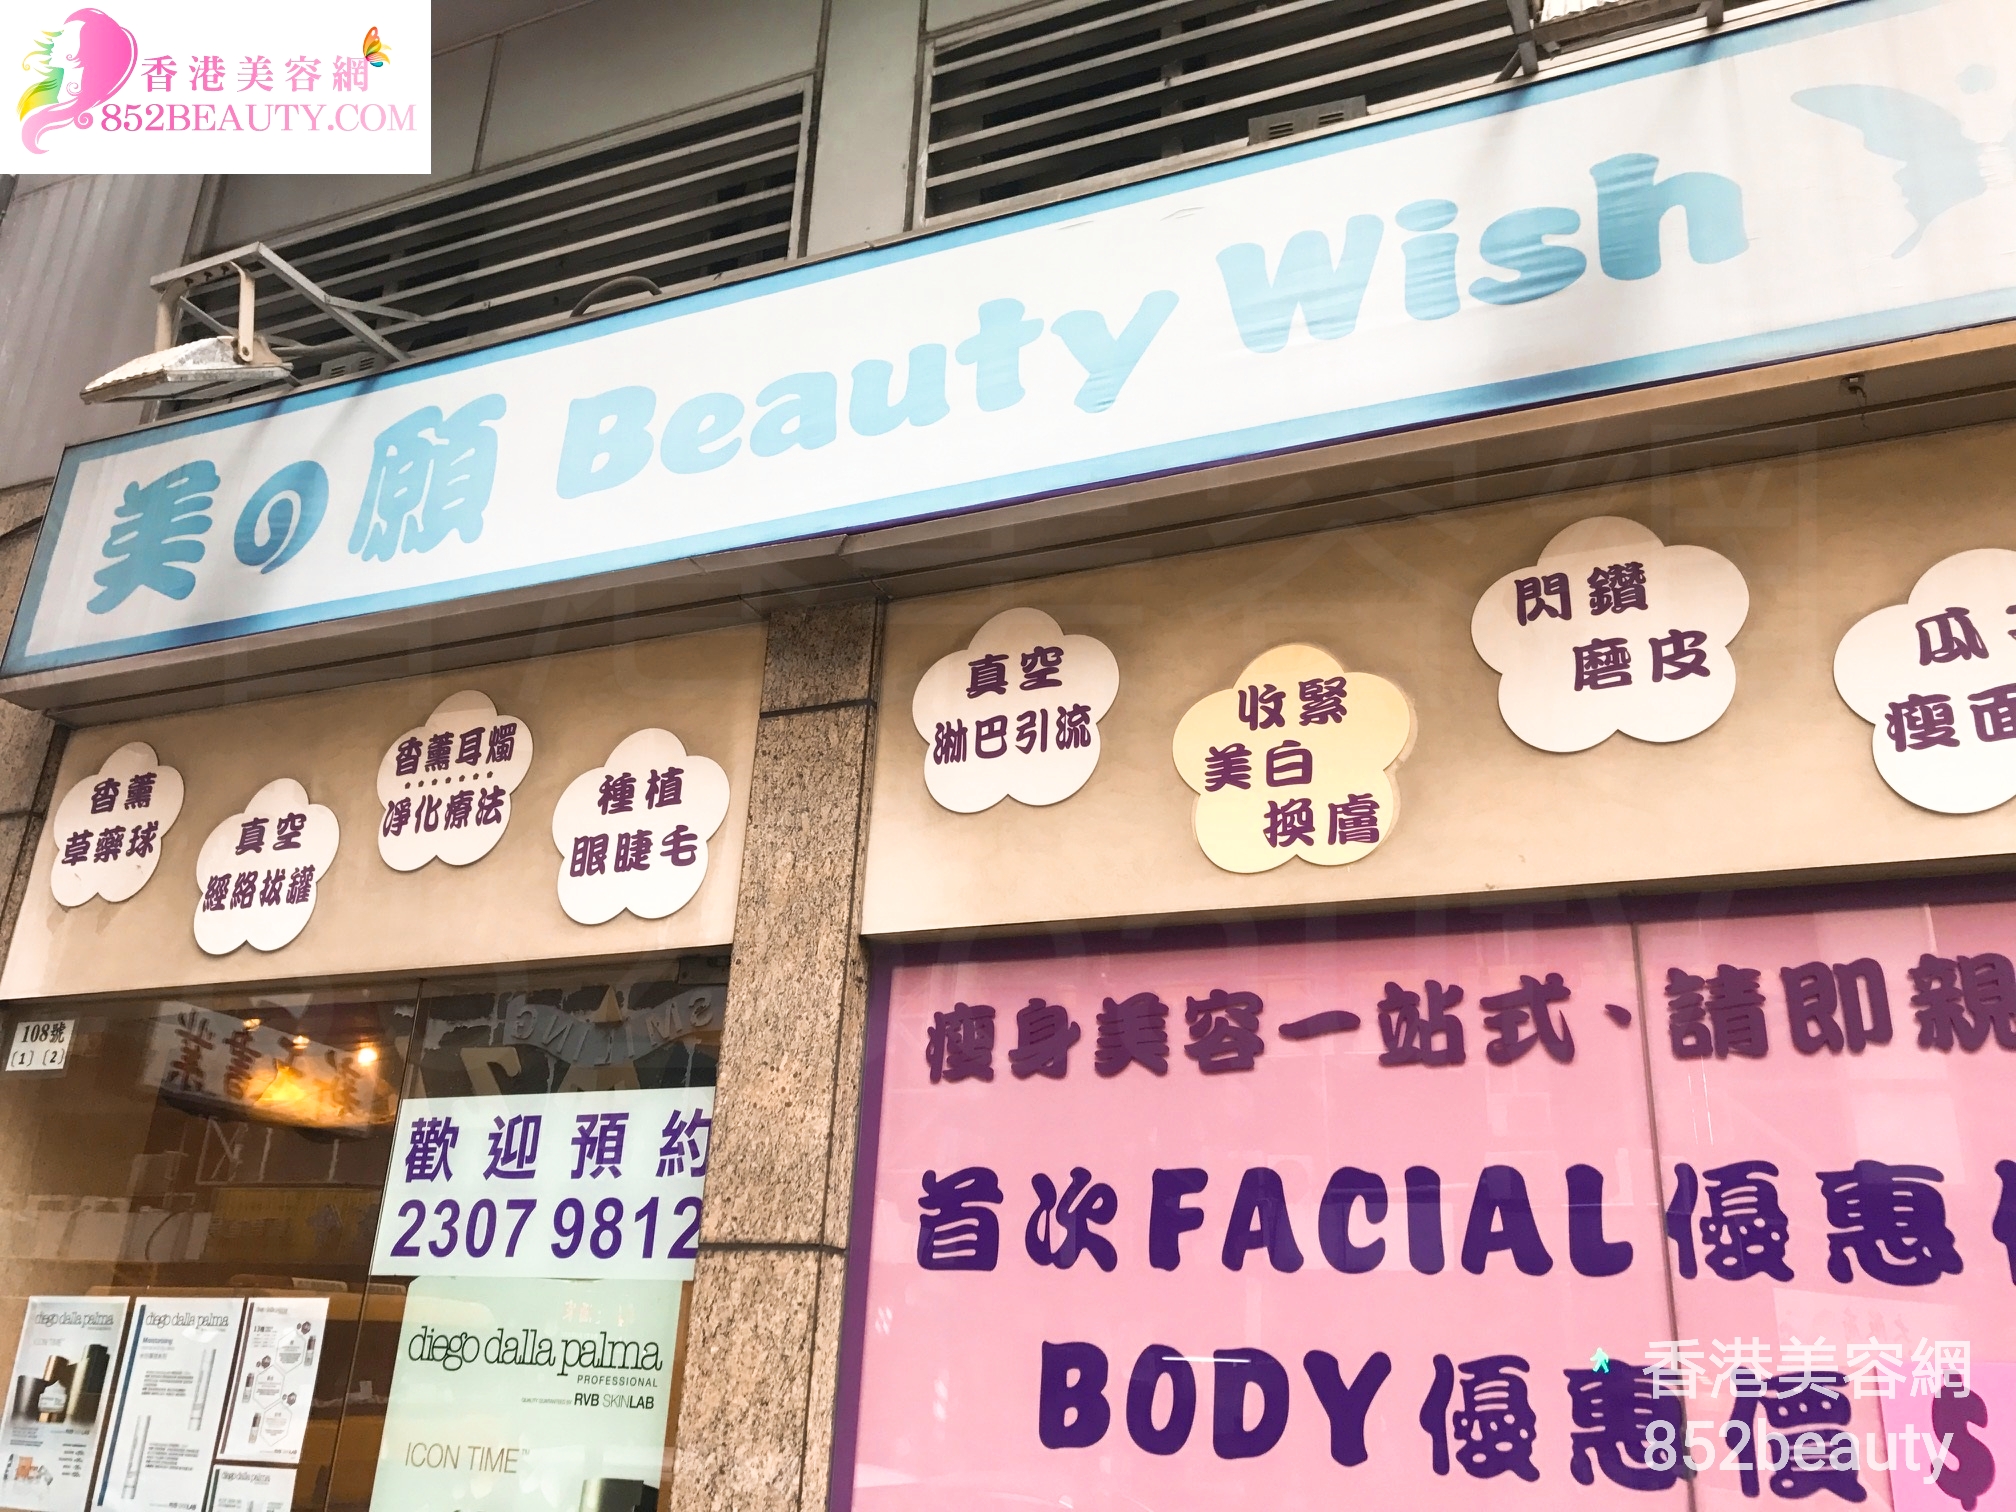 Facial Care: 美の願 Beauty Wish